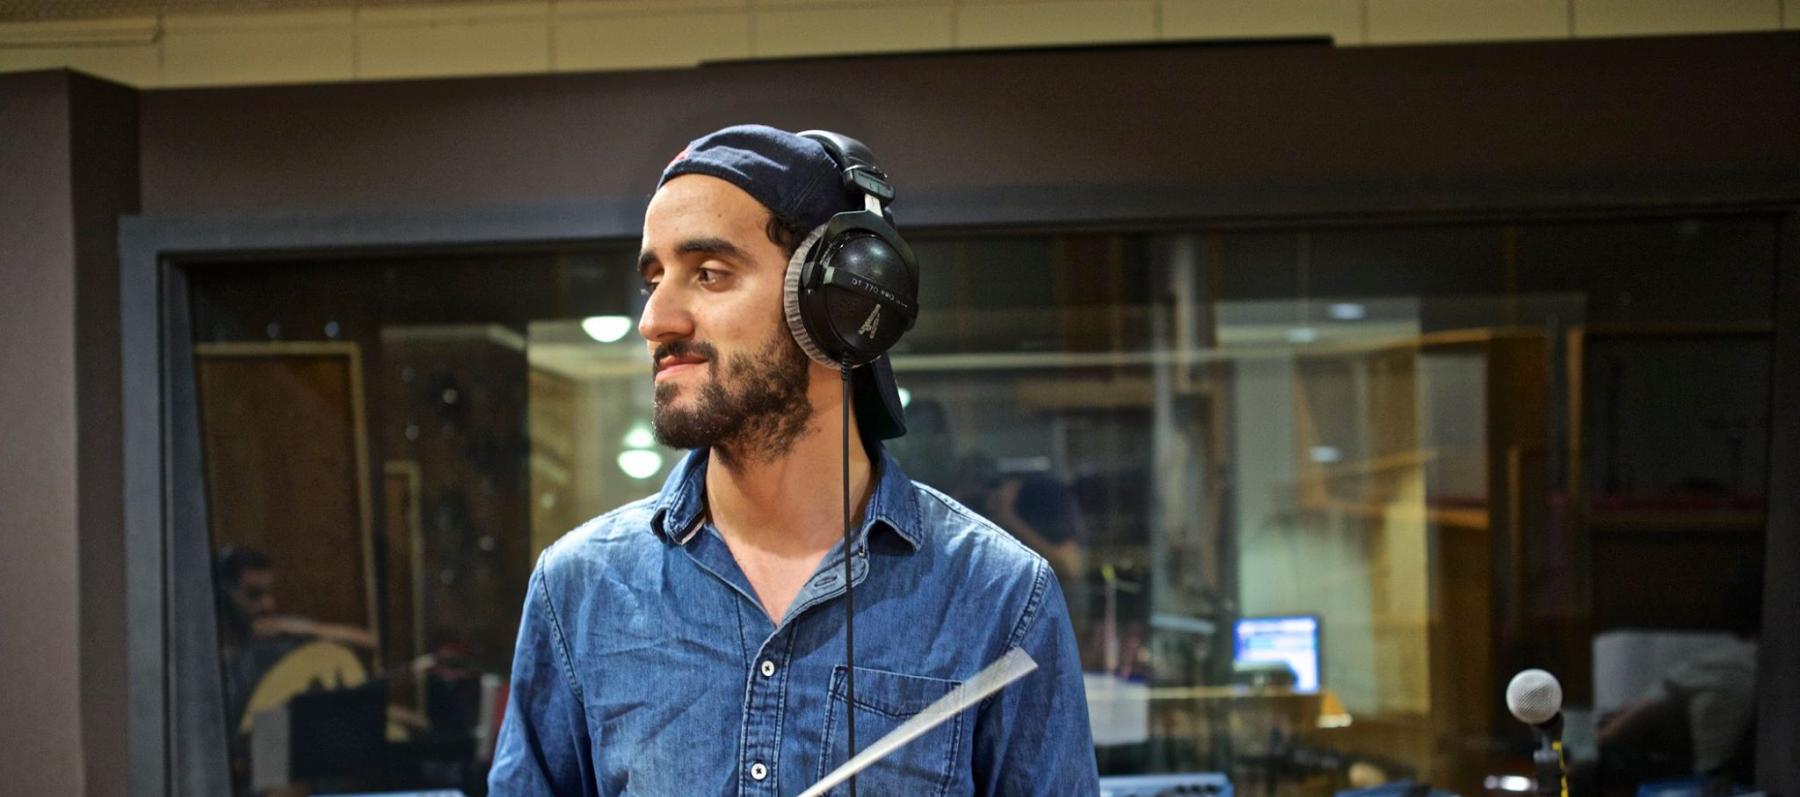 موسيقي ، قائد اوركستر ومنتج تونسي يتطلع للعالمية